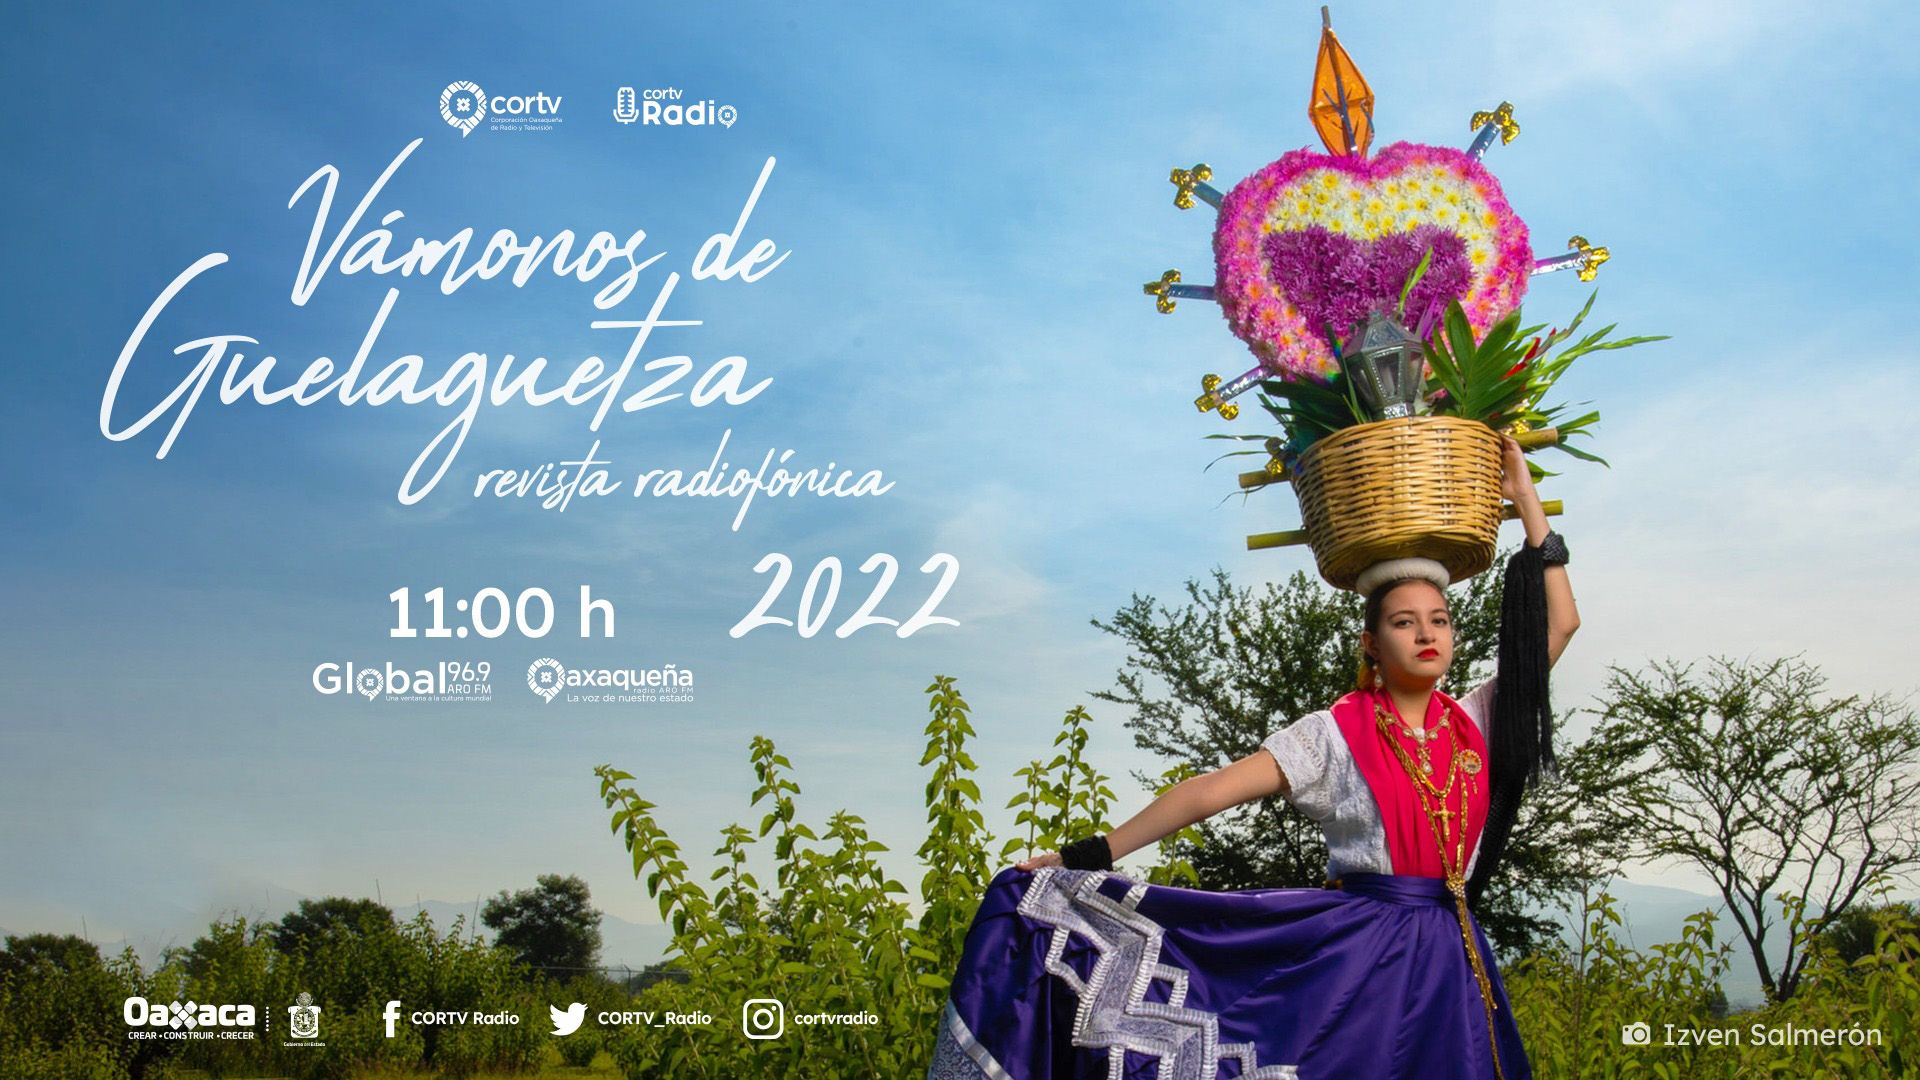 Ofrece Cortv Radio un recorrido sonoro por Oaxaca a través de “Vámonos de Guelaguetza 2022”